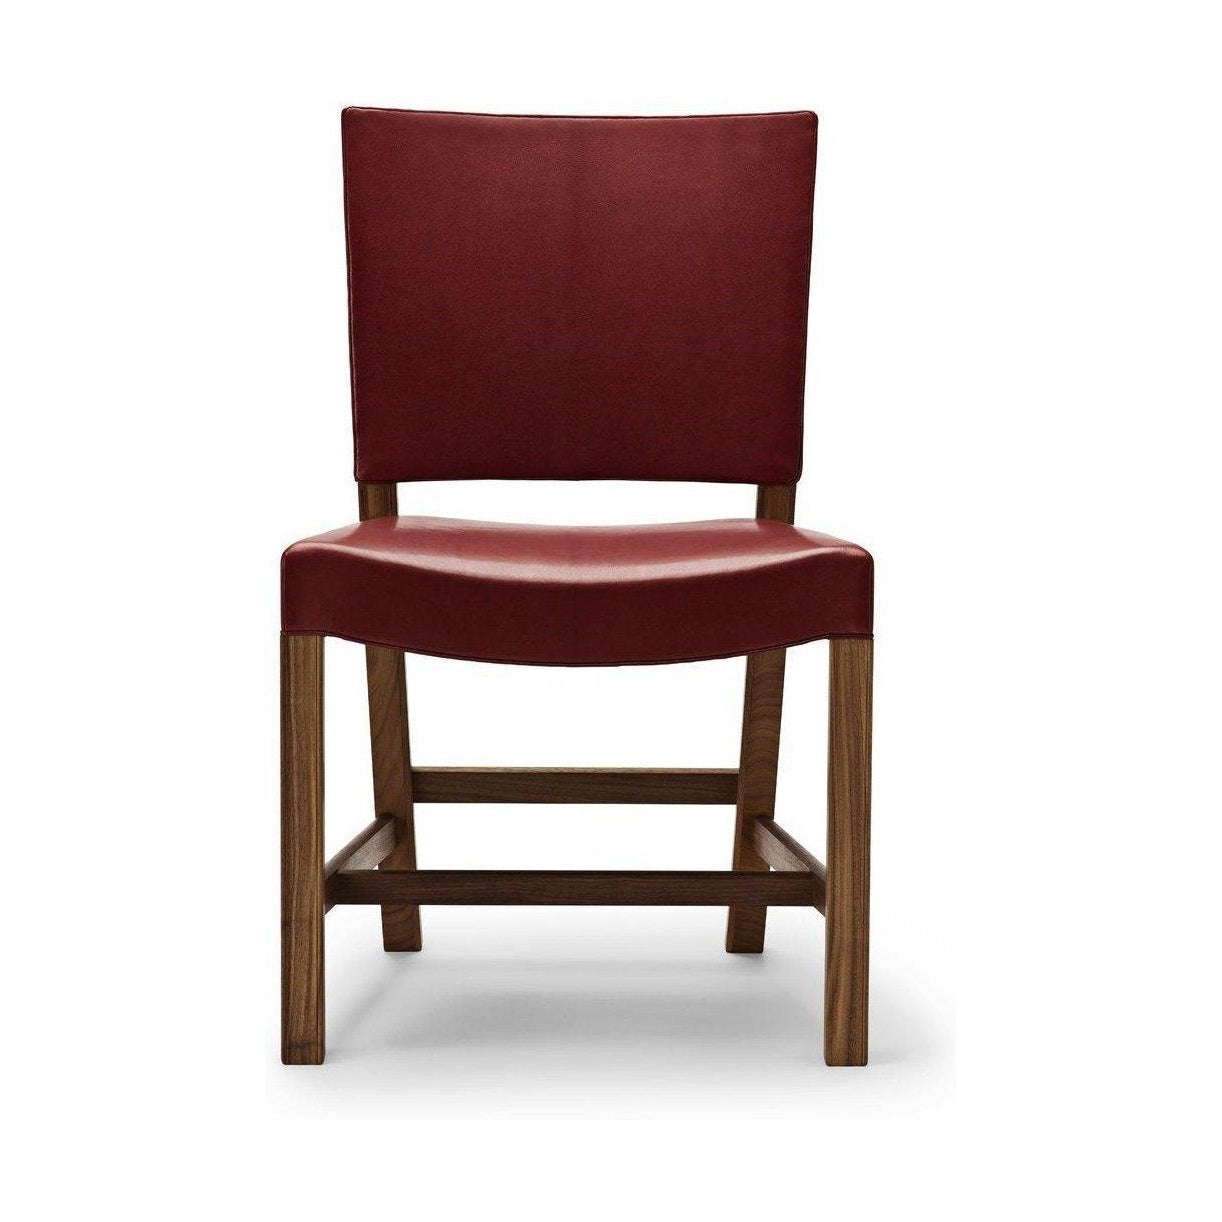 Carl Hansen KK47510 den røde stol, lakeret valnød/rød gedeskind